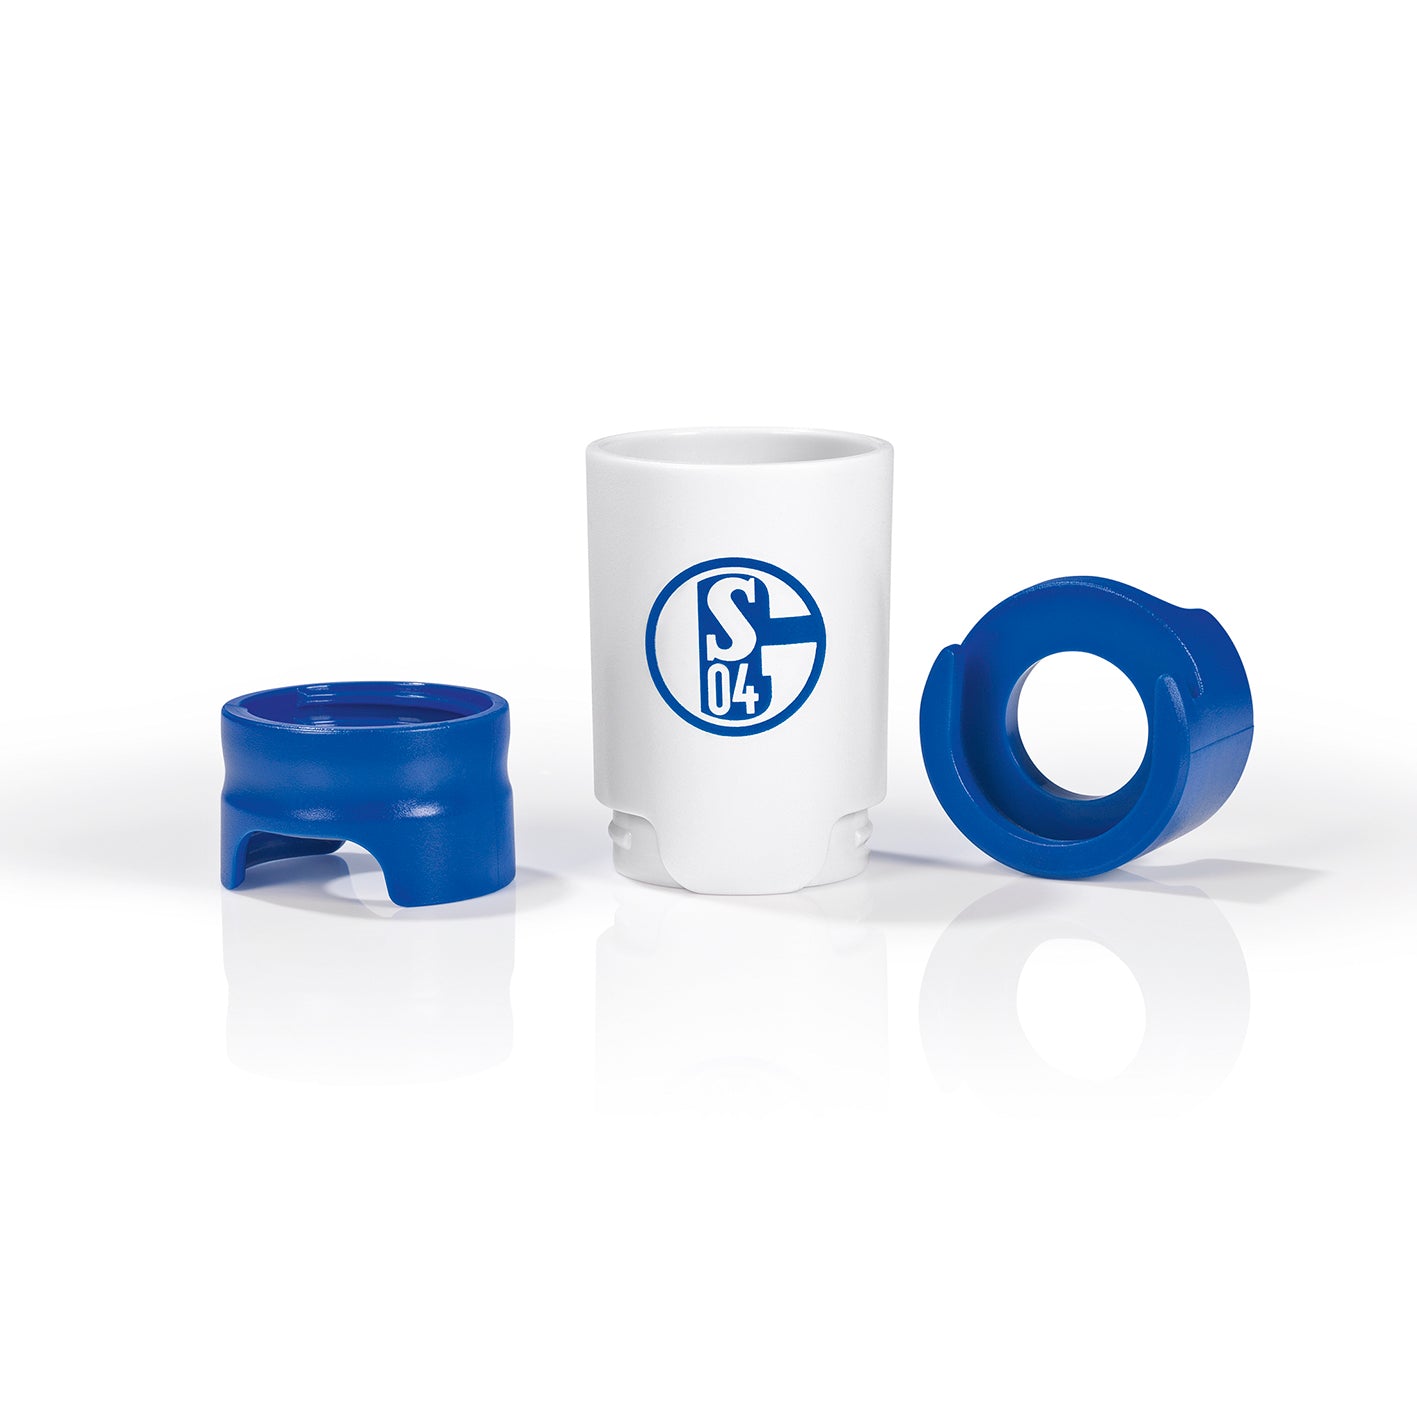 Bier-Aufbereiter im FC Schalke 04-Design - 3er-Set